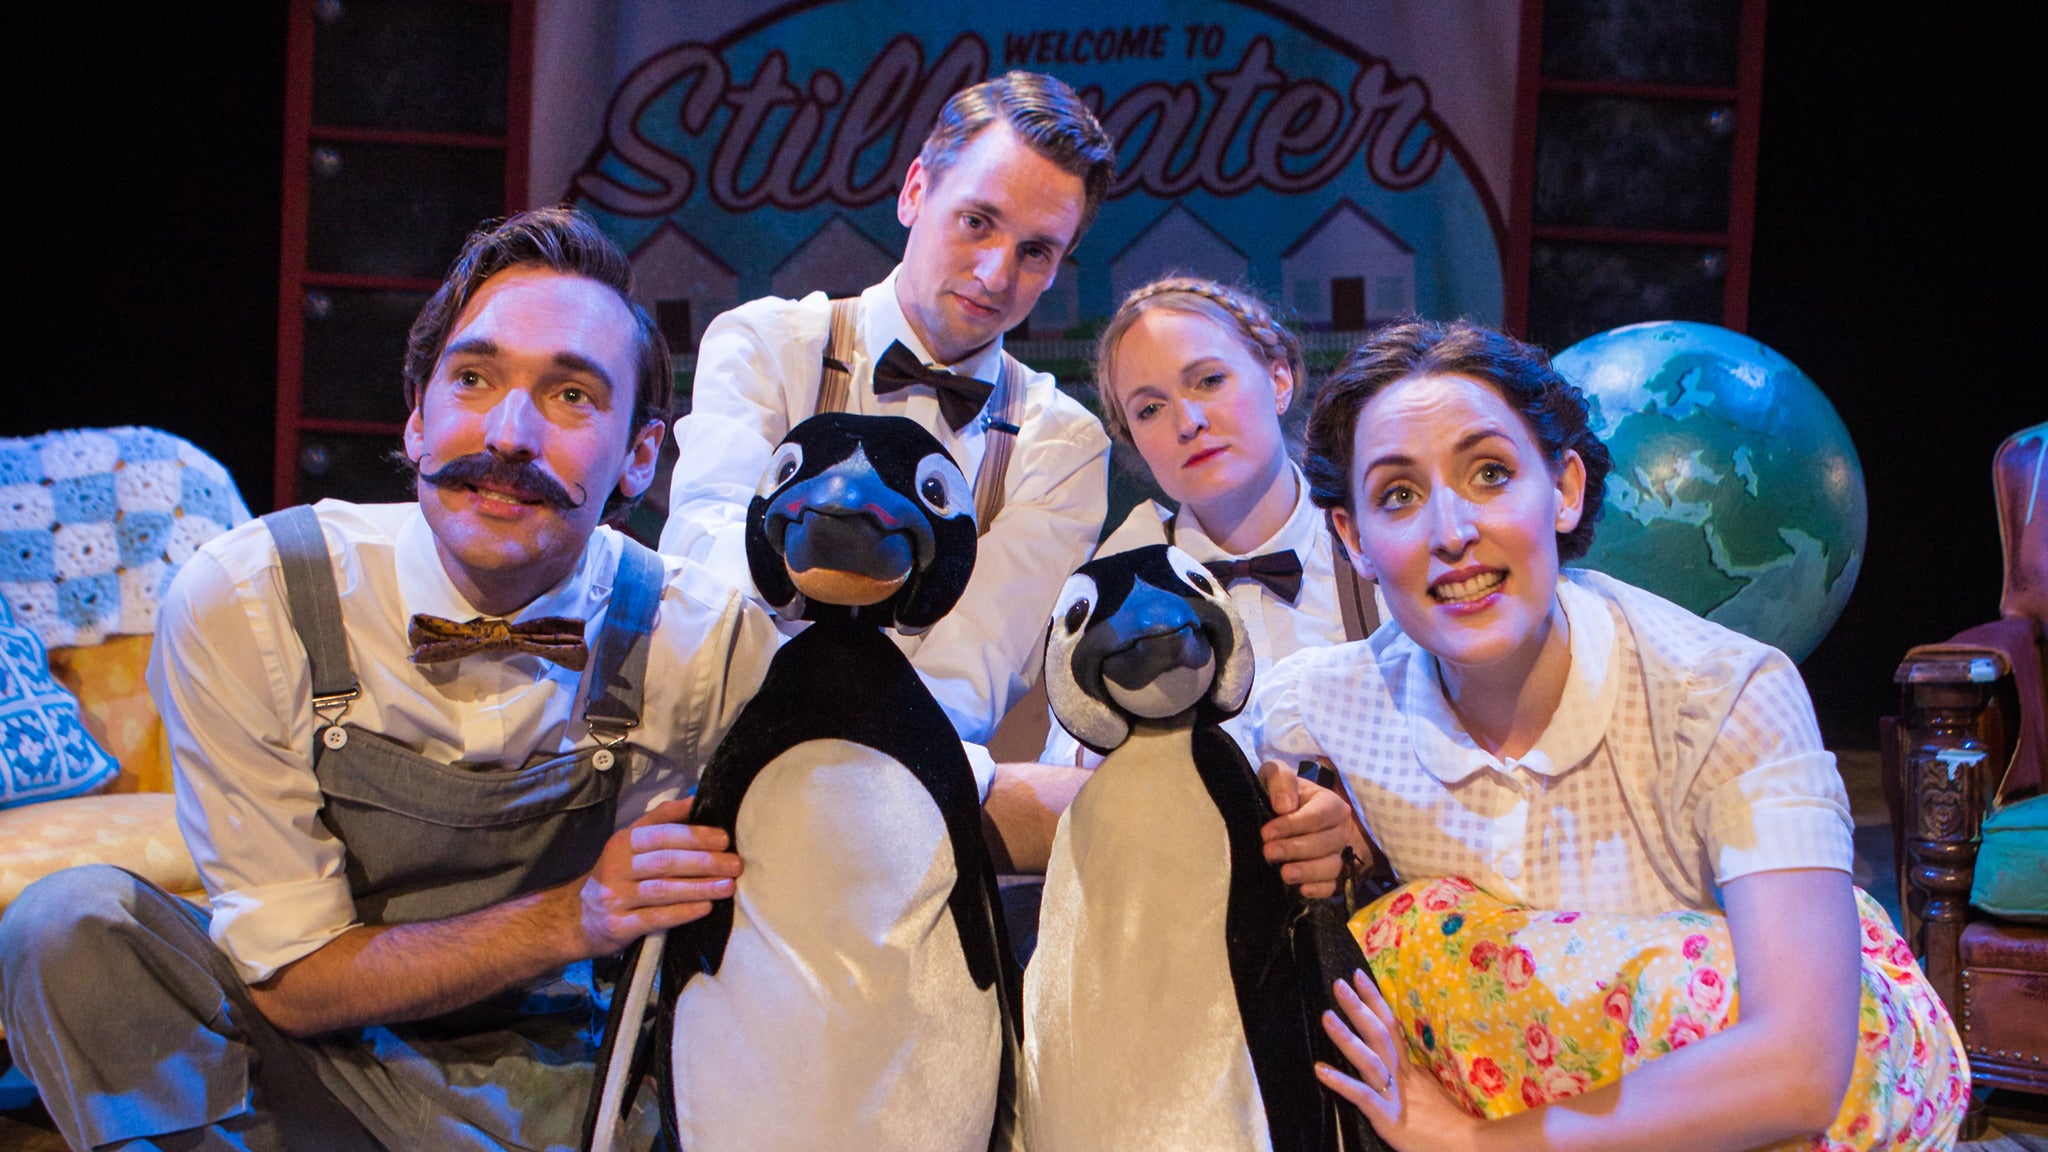 Mr Popper's Penguins in Brookville promo photo for Special  presale offer code